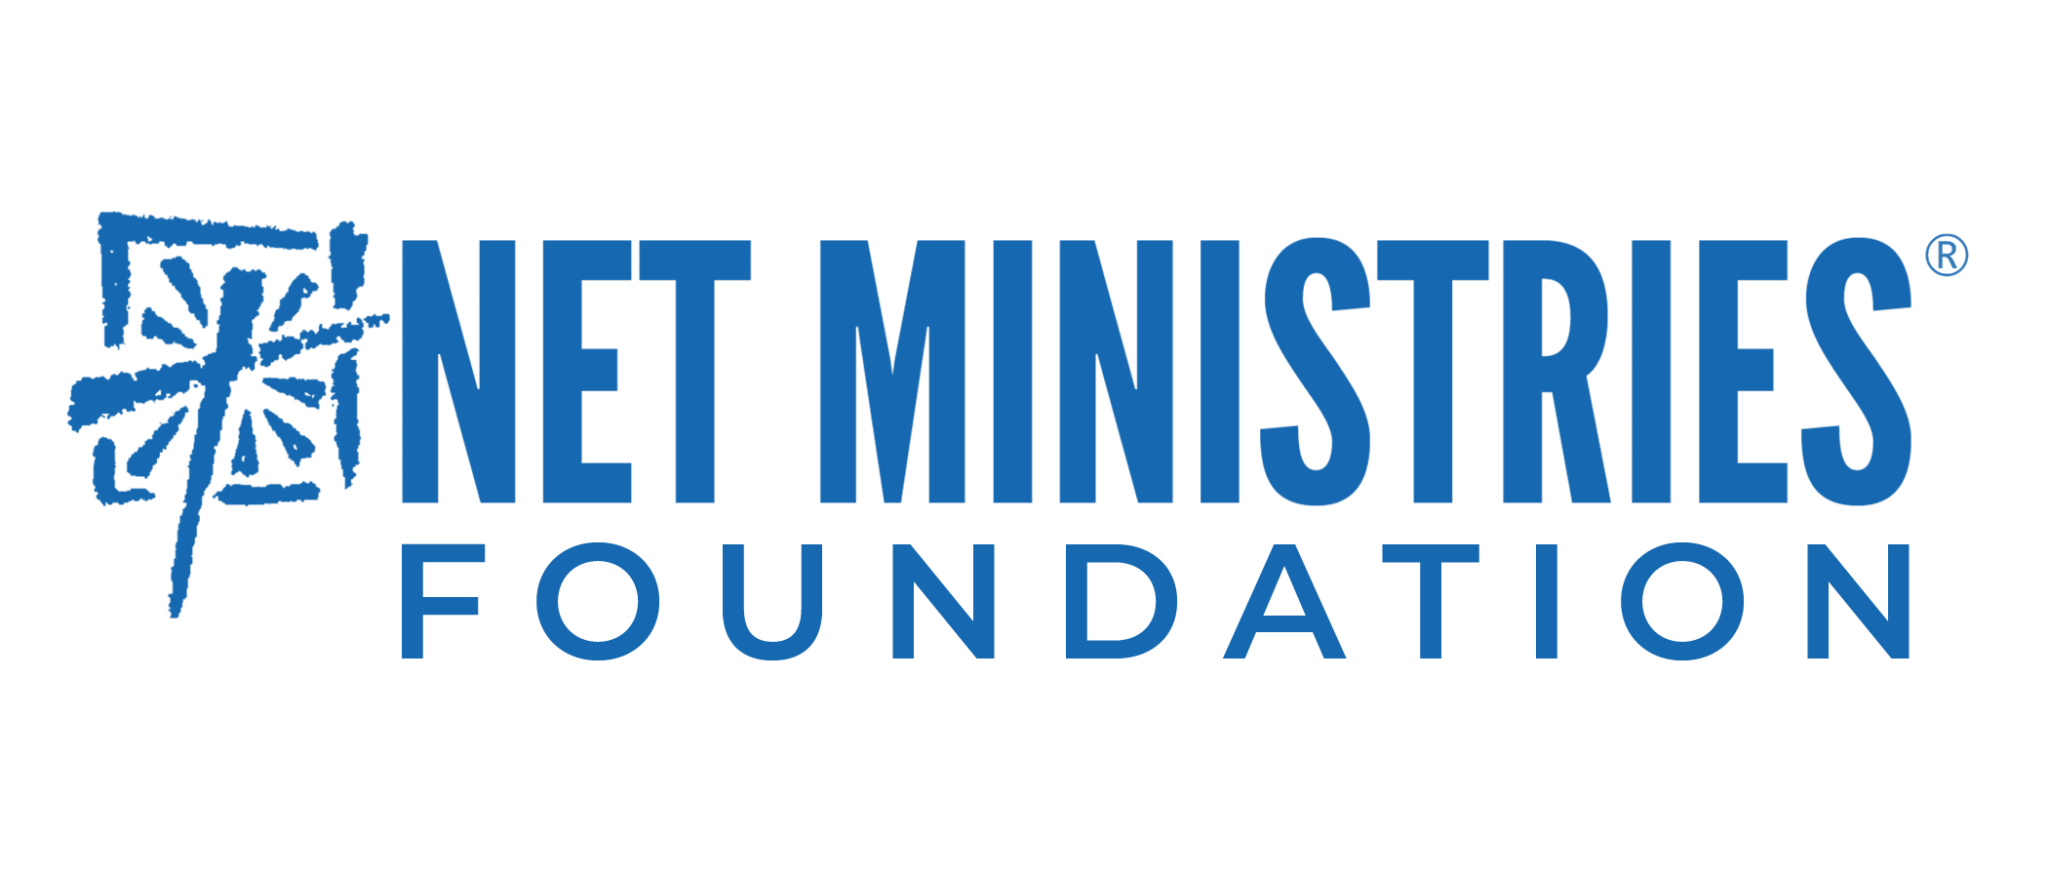 Foundation-Logo-Blue-2048x878